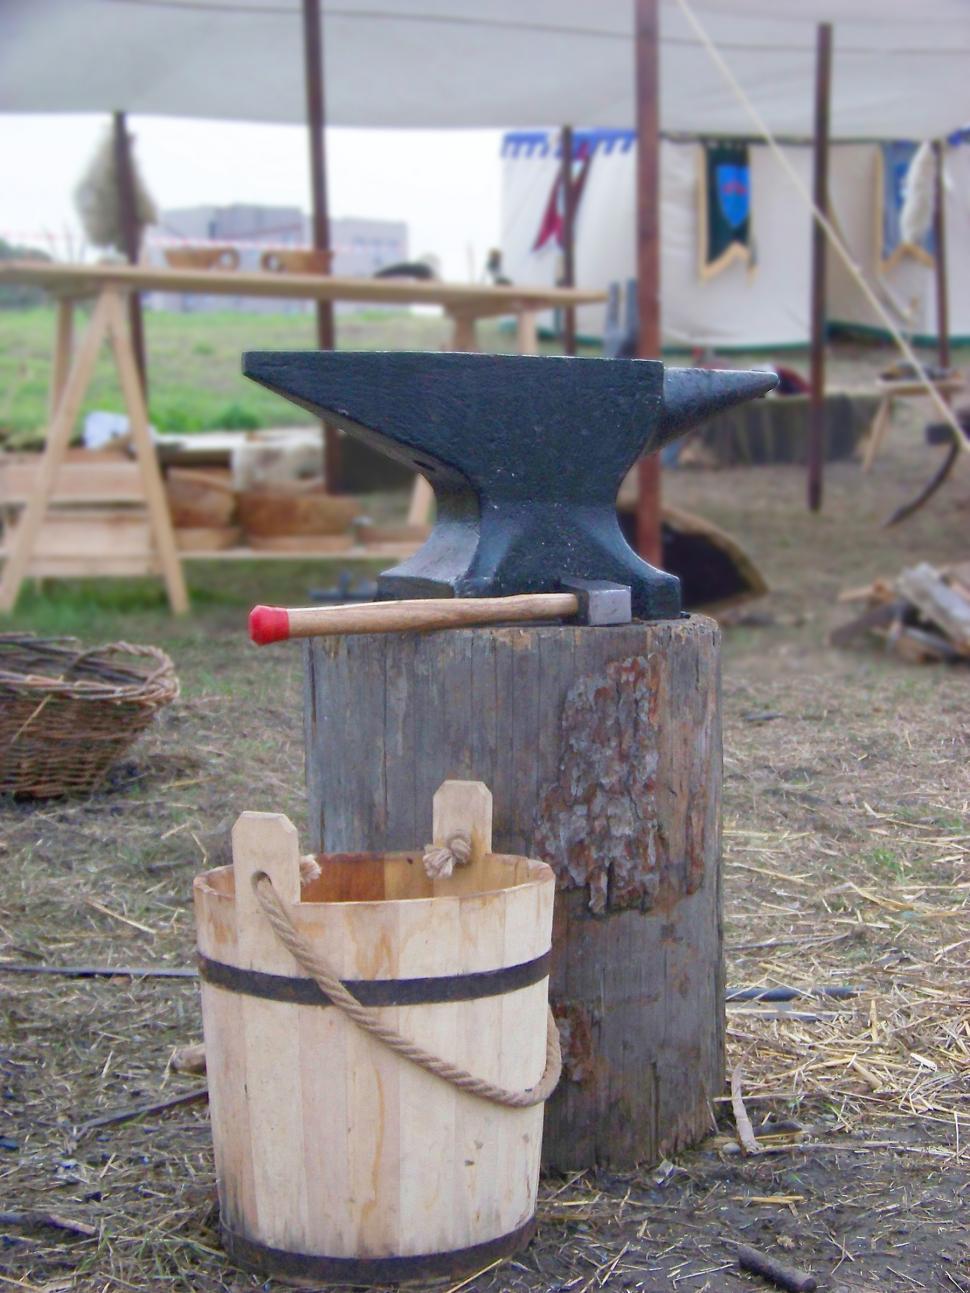 Free Image of Medieval anvil on stump 